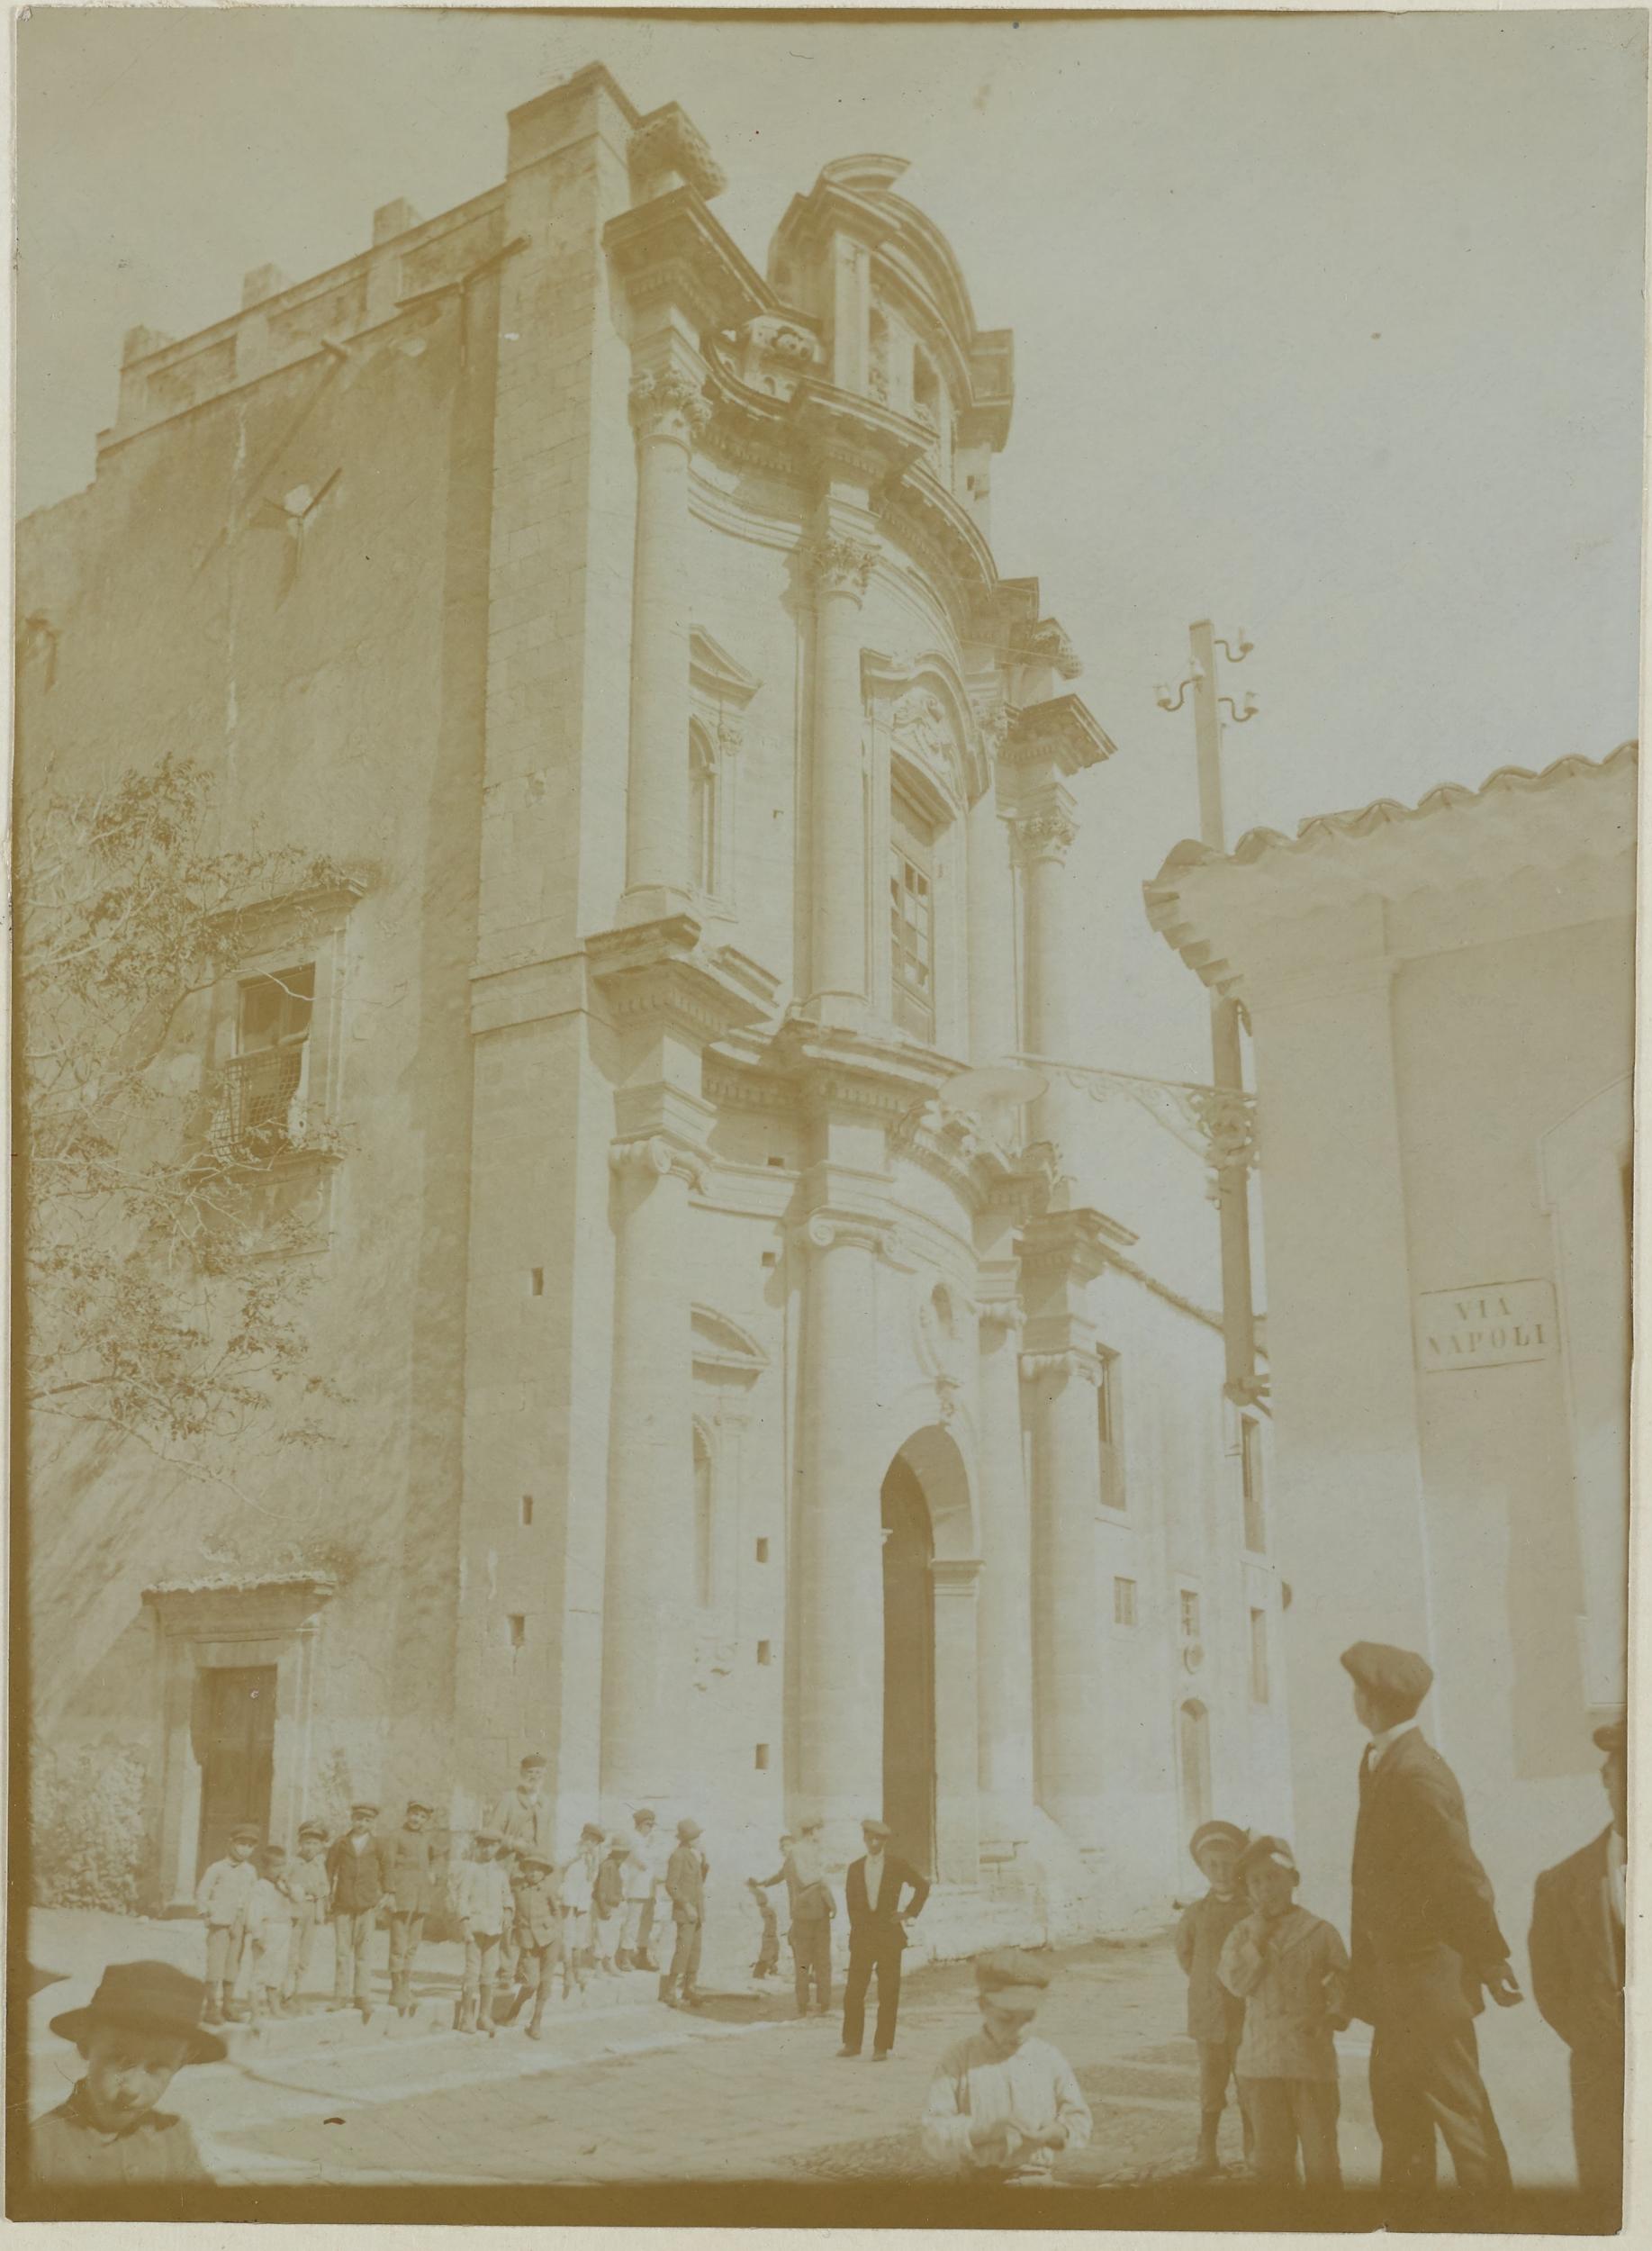 Fotografo non identificato, Avola - Chiesa della SS. Annunziata, facciata e fianco sinistro, 1891-1910, aristotipo, MPI135437B